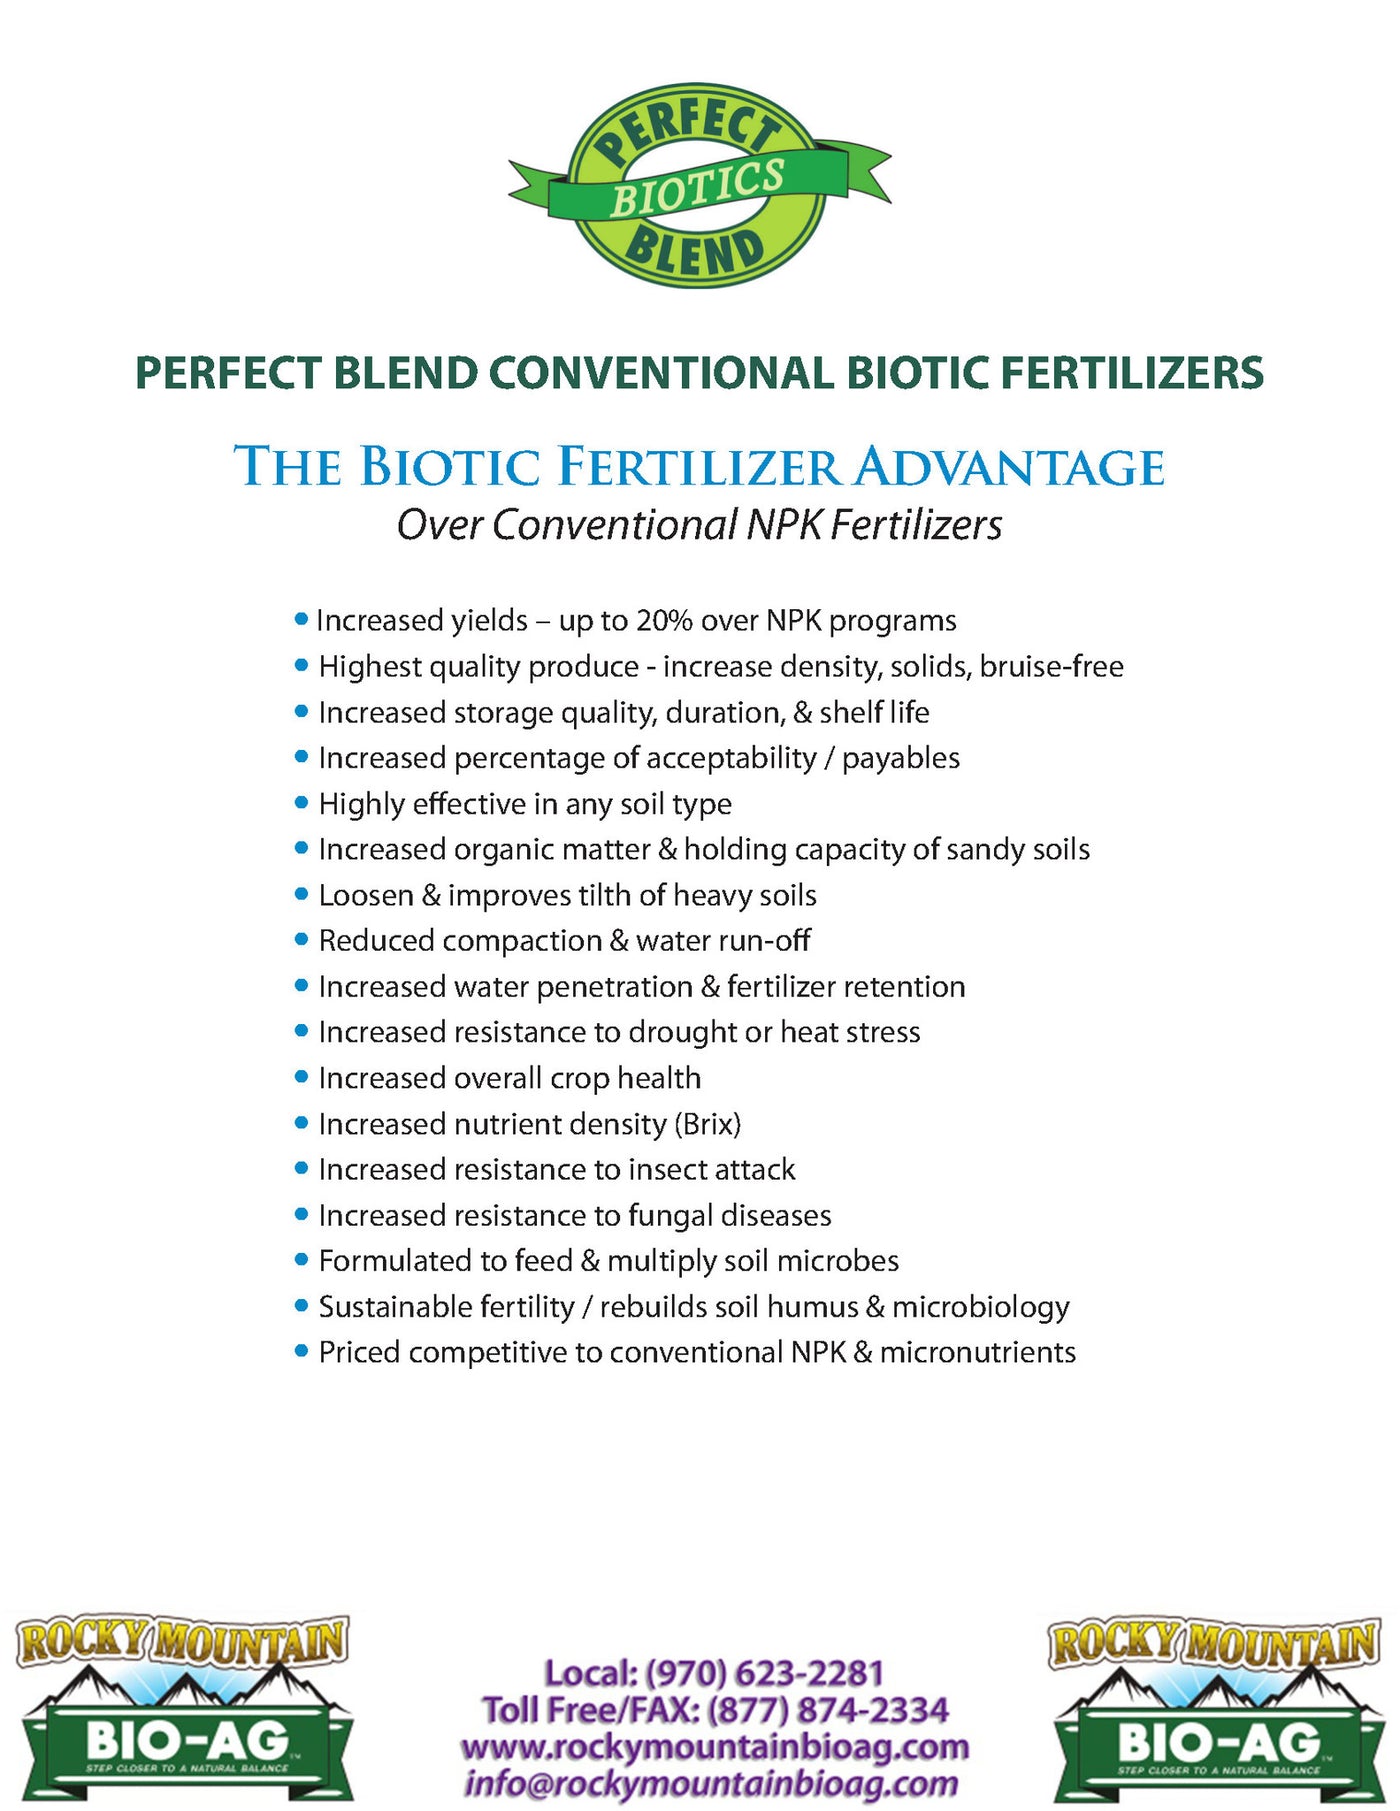 The Biotic Fertilizer Advantage Over Conventional NPK Fertilizer